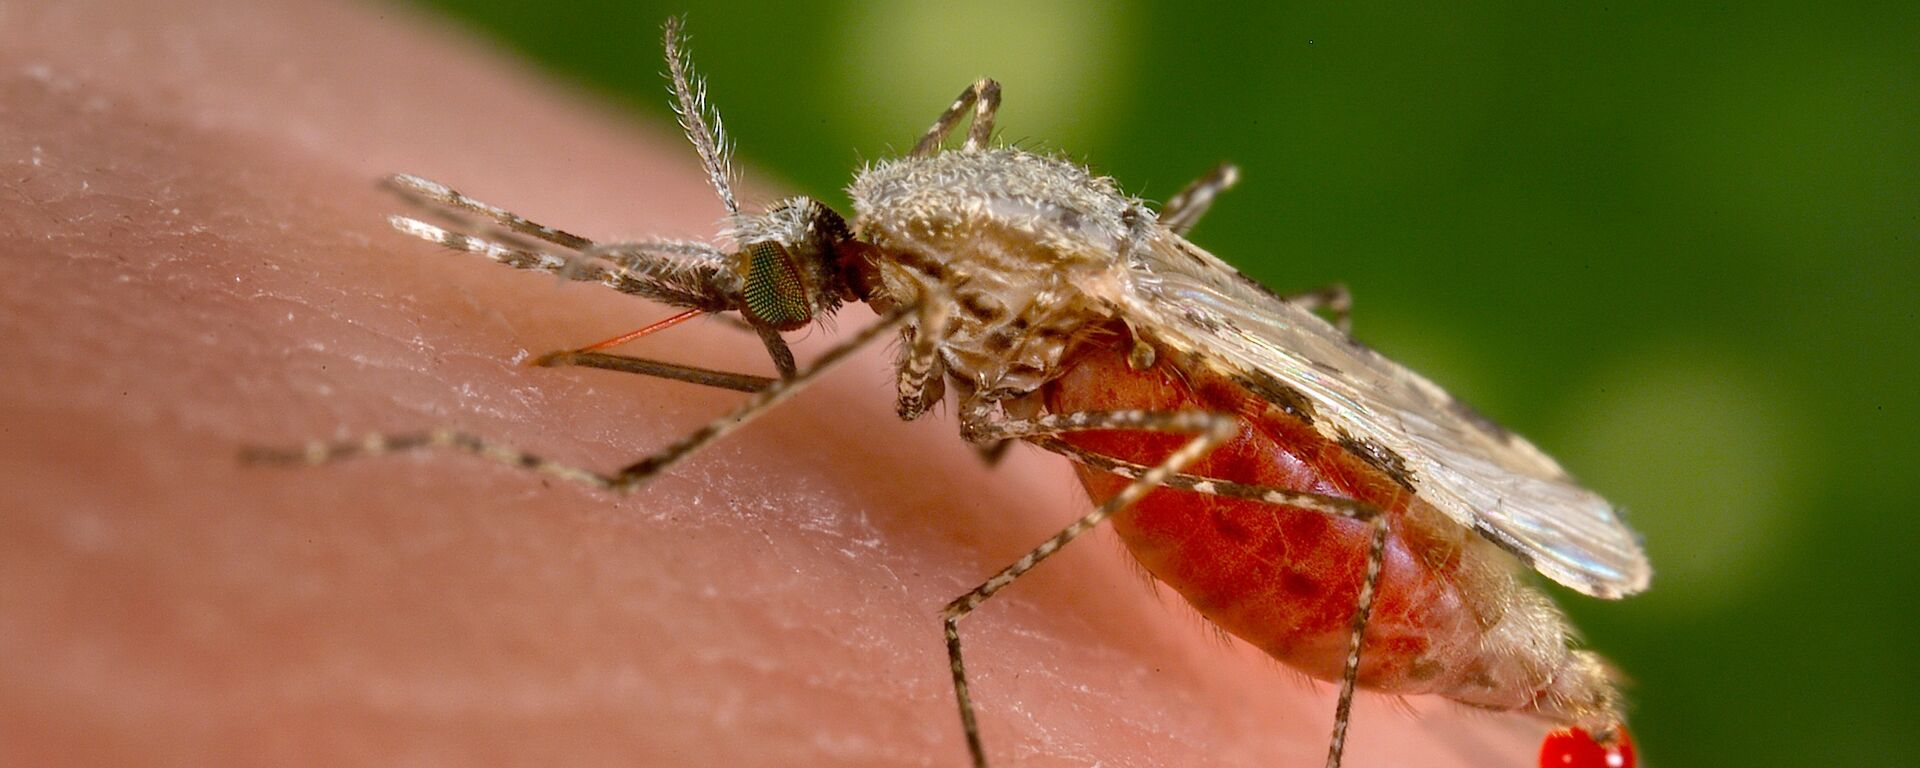 El mosquito Anopheles stephensi es el responsable de trasmitir la malaria a los humanos - Sputnik Mundo, 1920, 06.05.2020